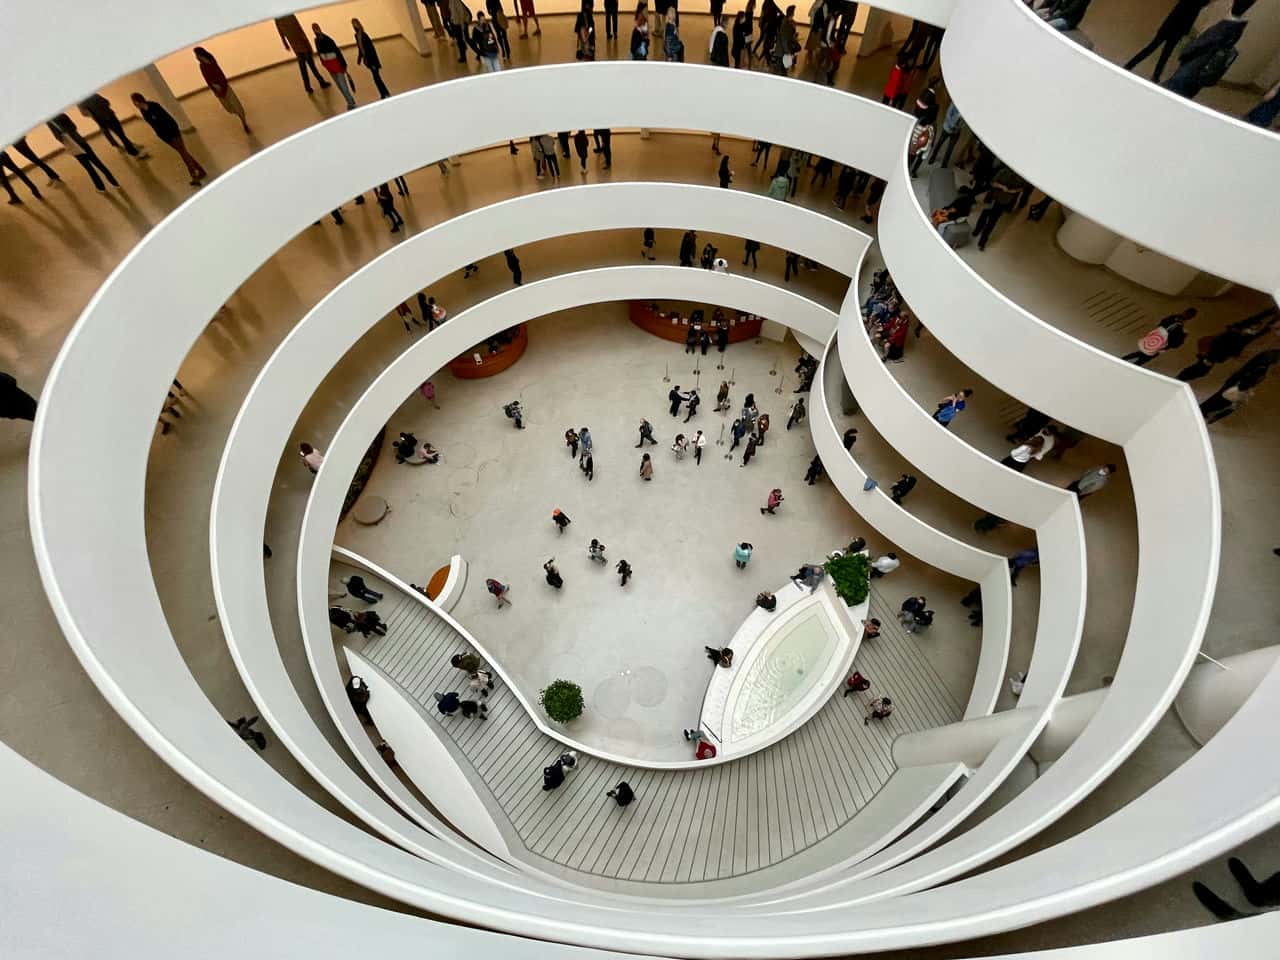 Guggenheim museum new york city interior © nicholas ceglia